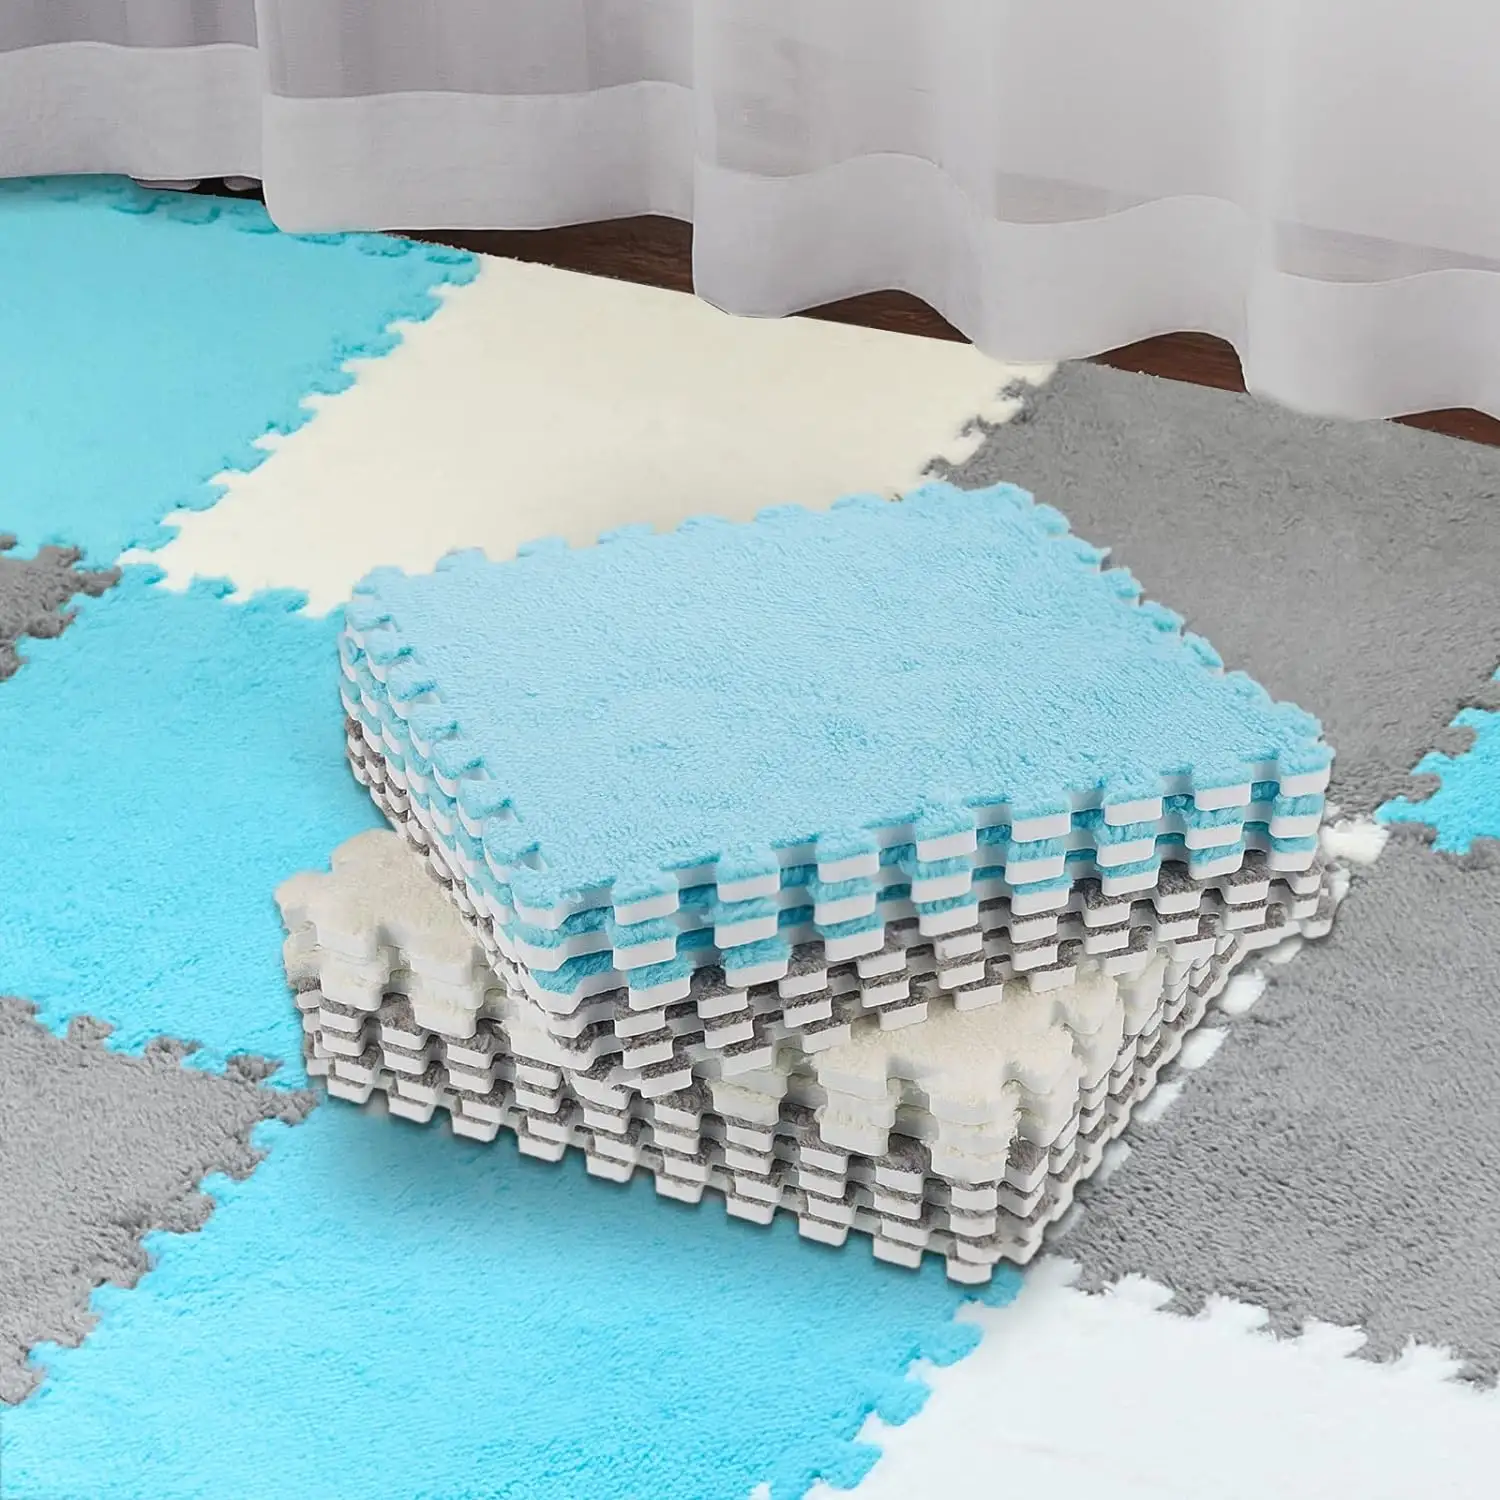 Plüsch schaum Interlocking Boden matte Fluffy Square Interlocking Foam Fliesen Weiche Anti-Rutsch-Puzzle-Teppich Spiel matte für Raum boden